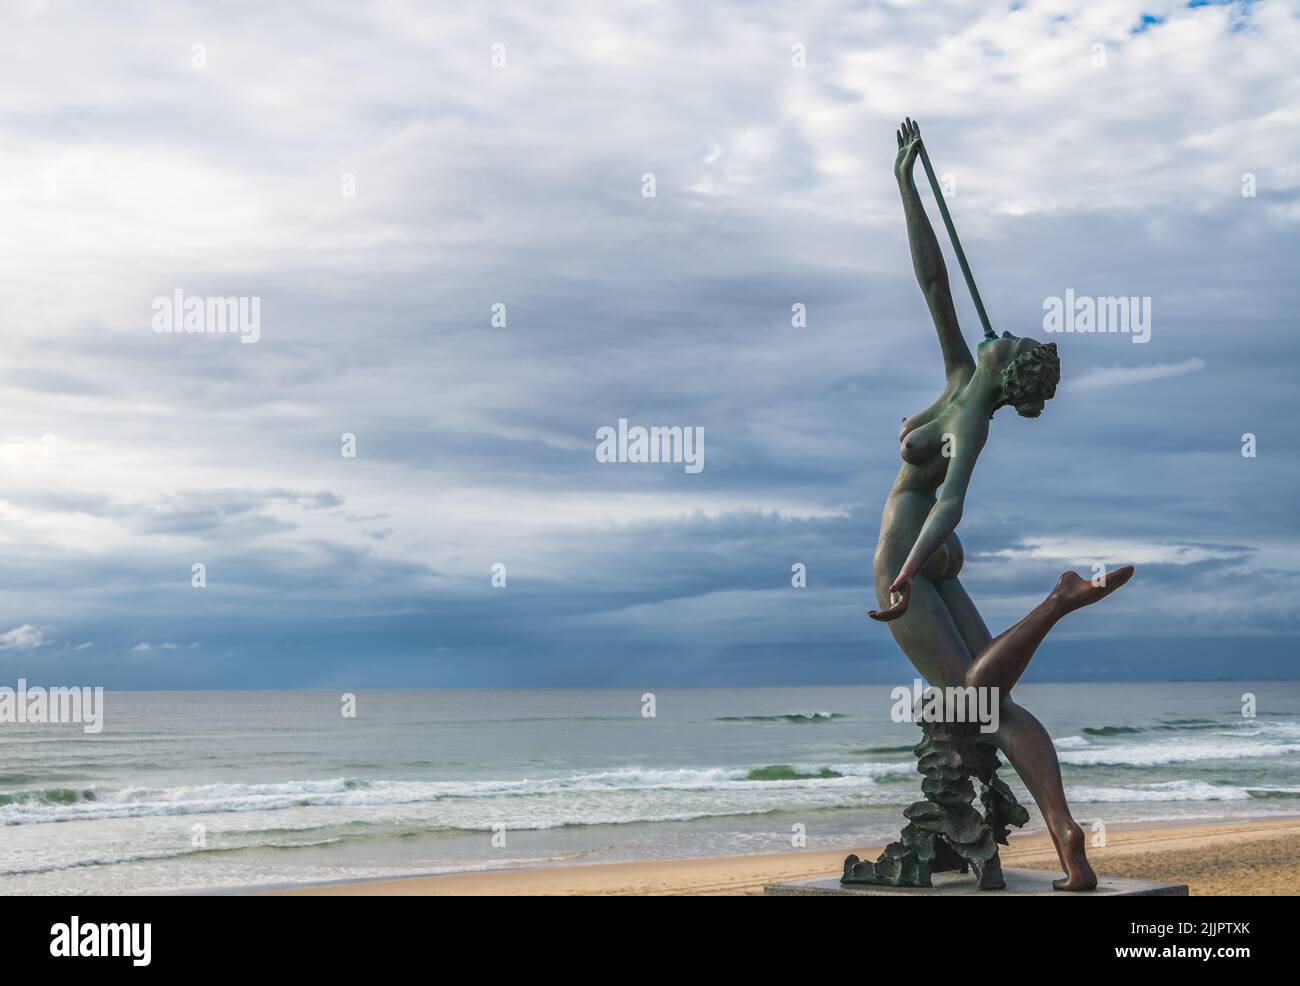 La célèbre sculpture en bronze « elody on the Foreshore » face aux vagues du Southport Surf Club, main Beach, Gold Coast, Queensland, Australie. Banque D'Images